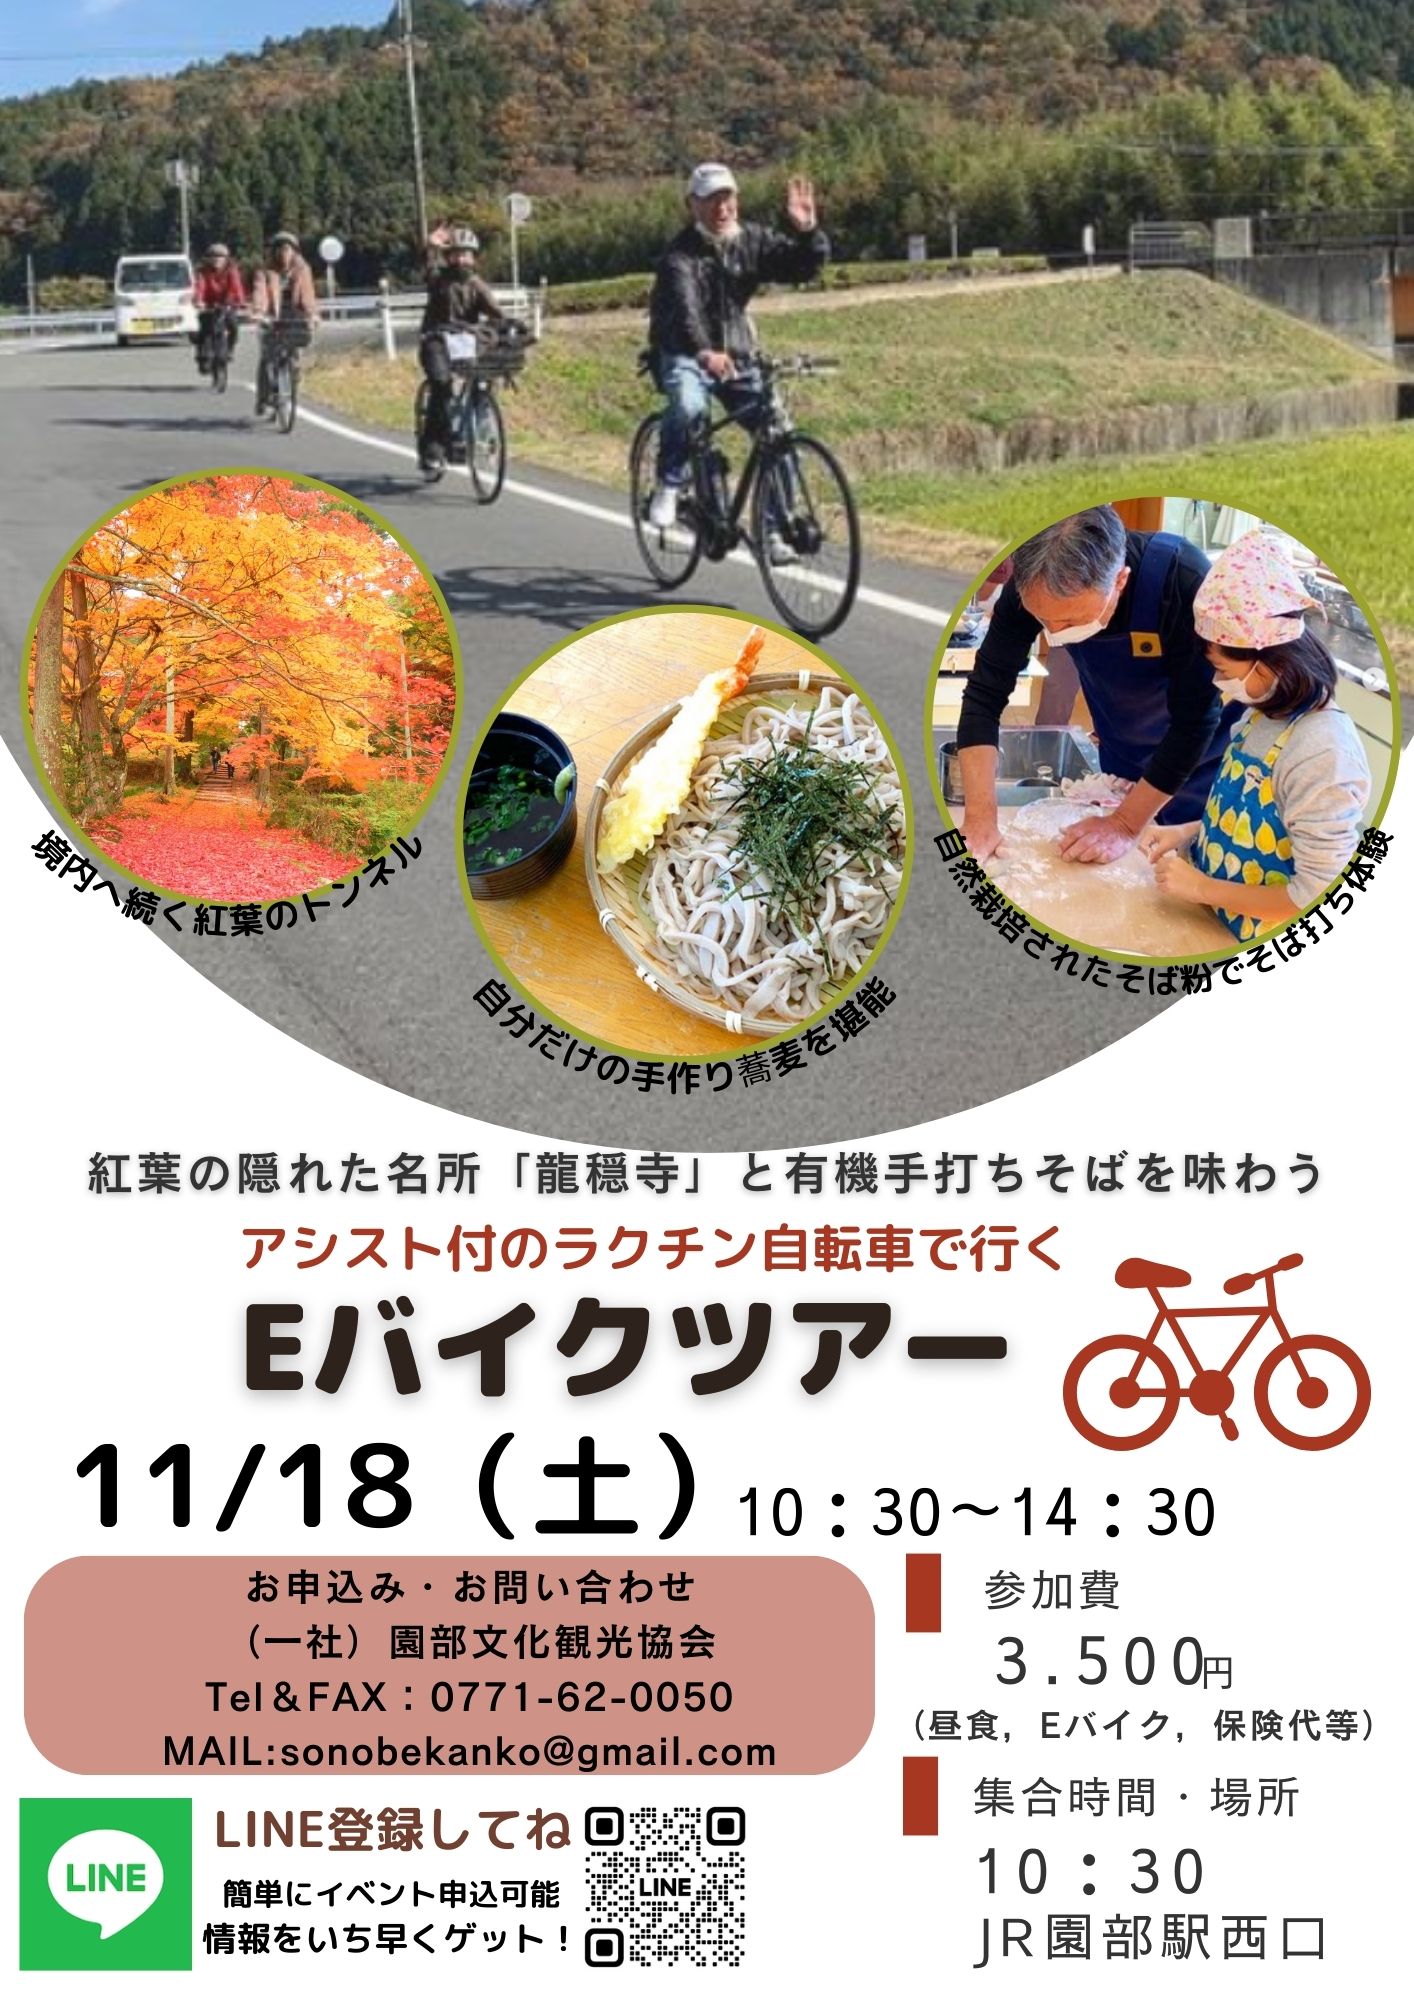 １１月１８日（土）Eバイクサイクリングツアー予約受付中